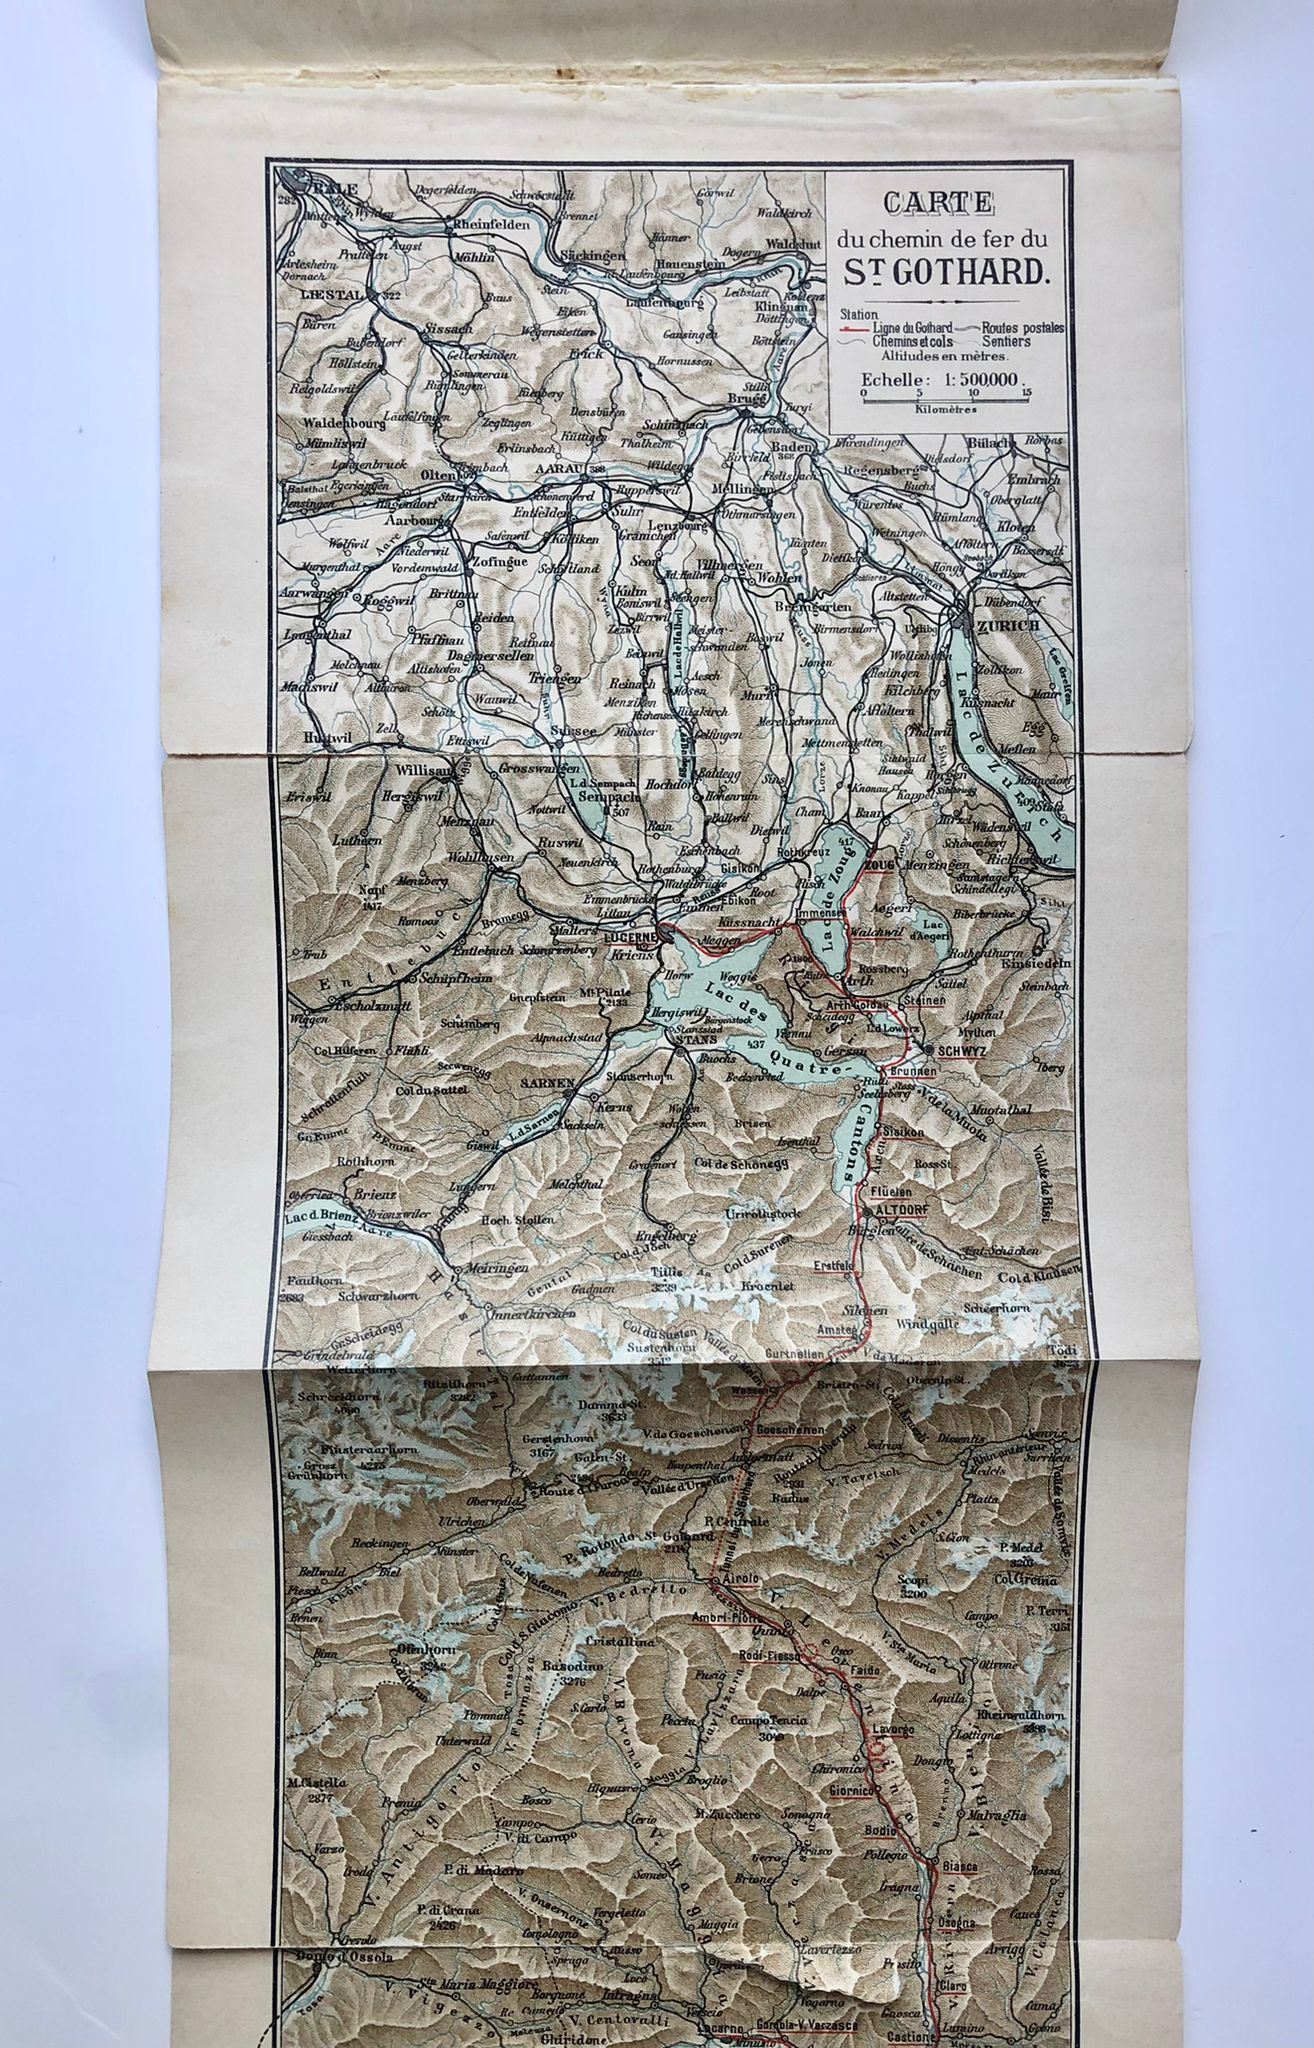 [Switzerland, 1904] Suisse, A travers les Alpes par le chemin de fer du Saint-Gothard, George L. Catlin, Art. Institut Orell Füssli, Zurich, 1904, 50 pp.